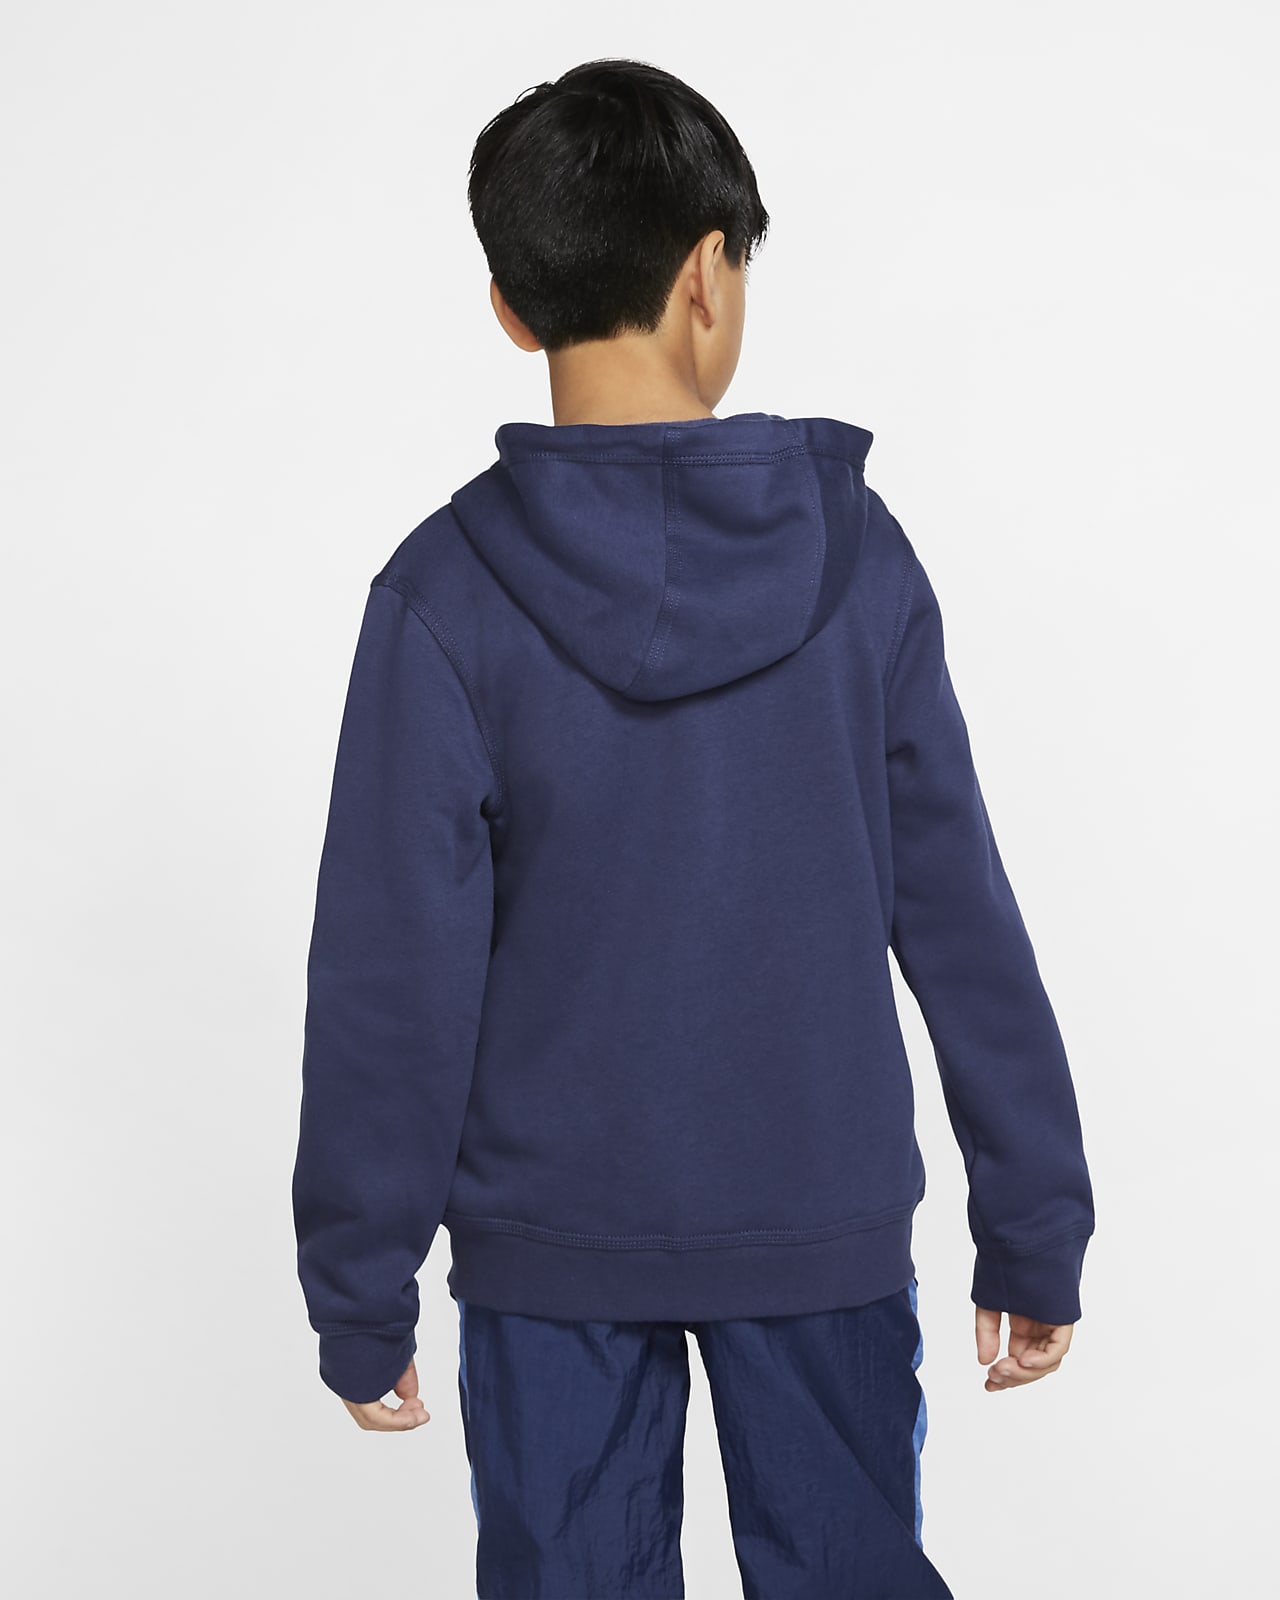 Auffüllen [sofortige Lieferung] Nike Sportswear Club Hoodie mit DE für Nike durchgehendem ältere Reißverschluss Kinder